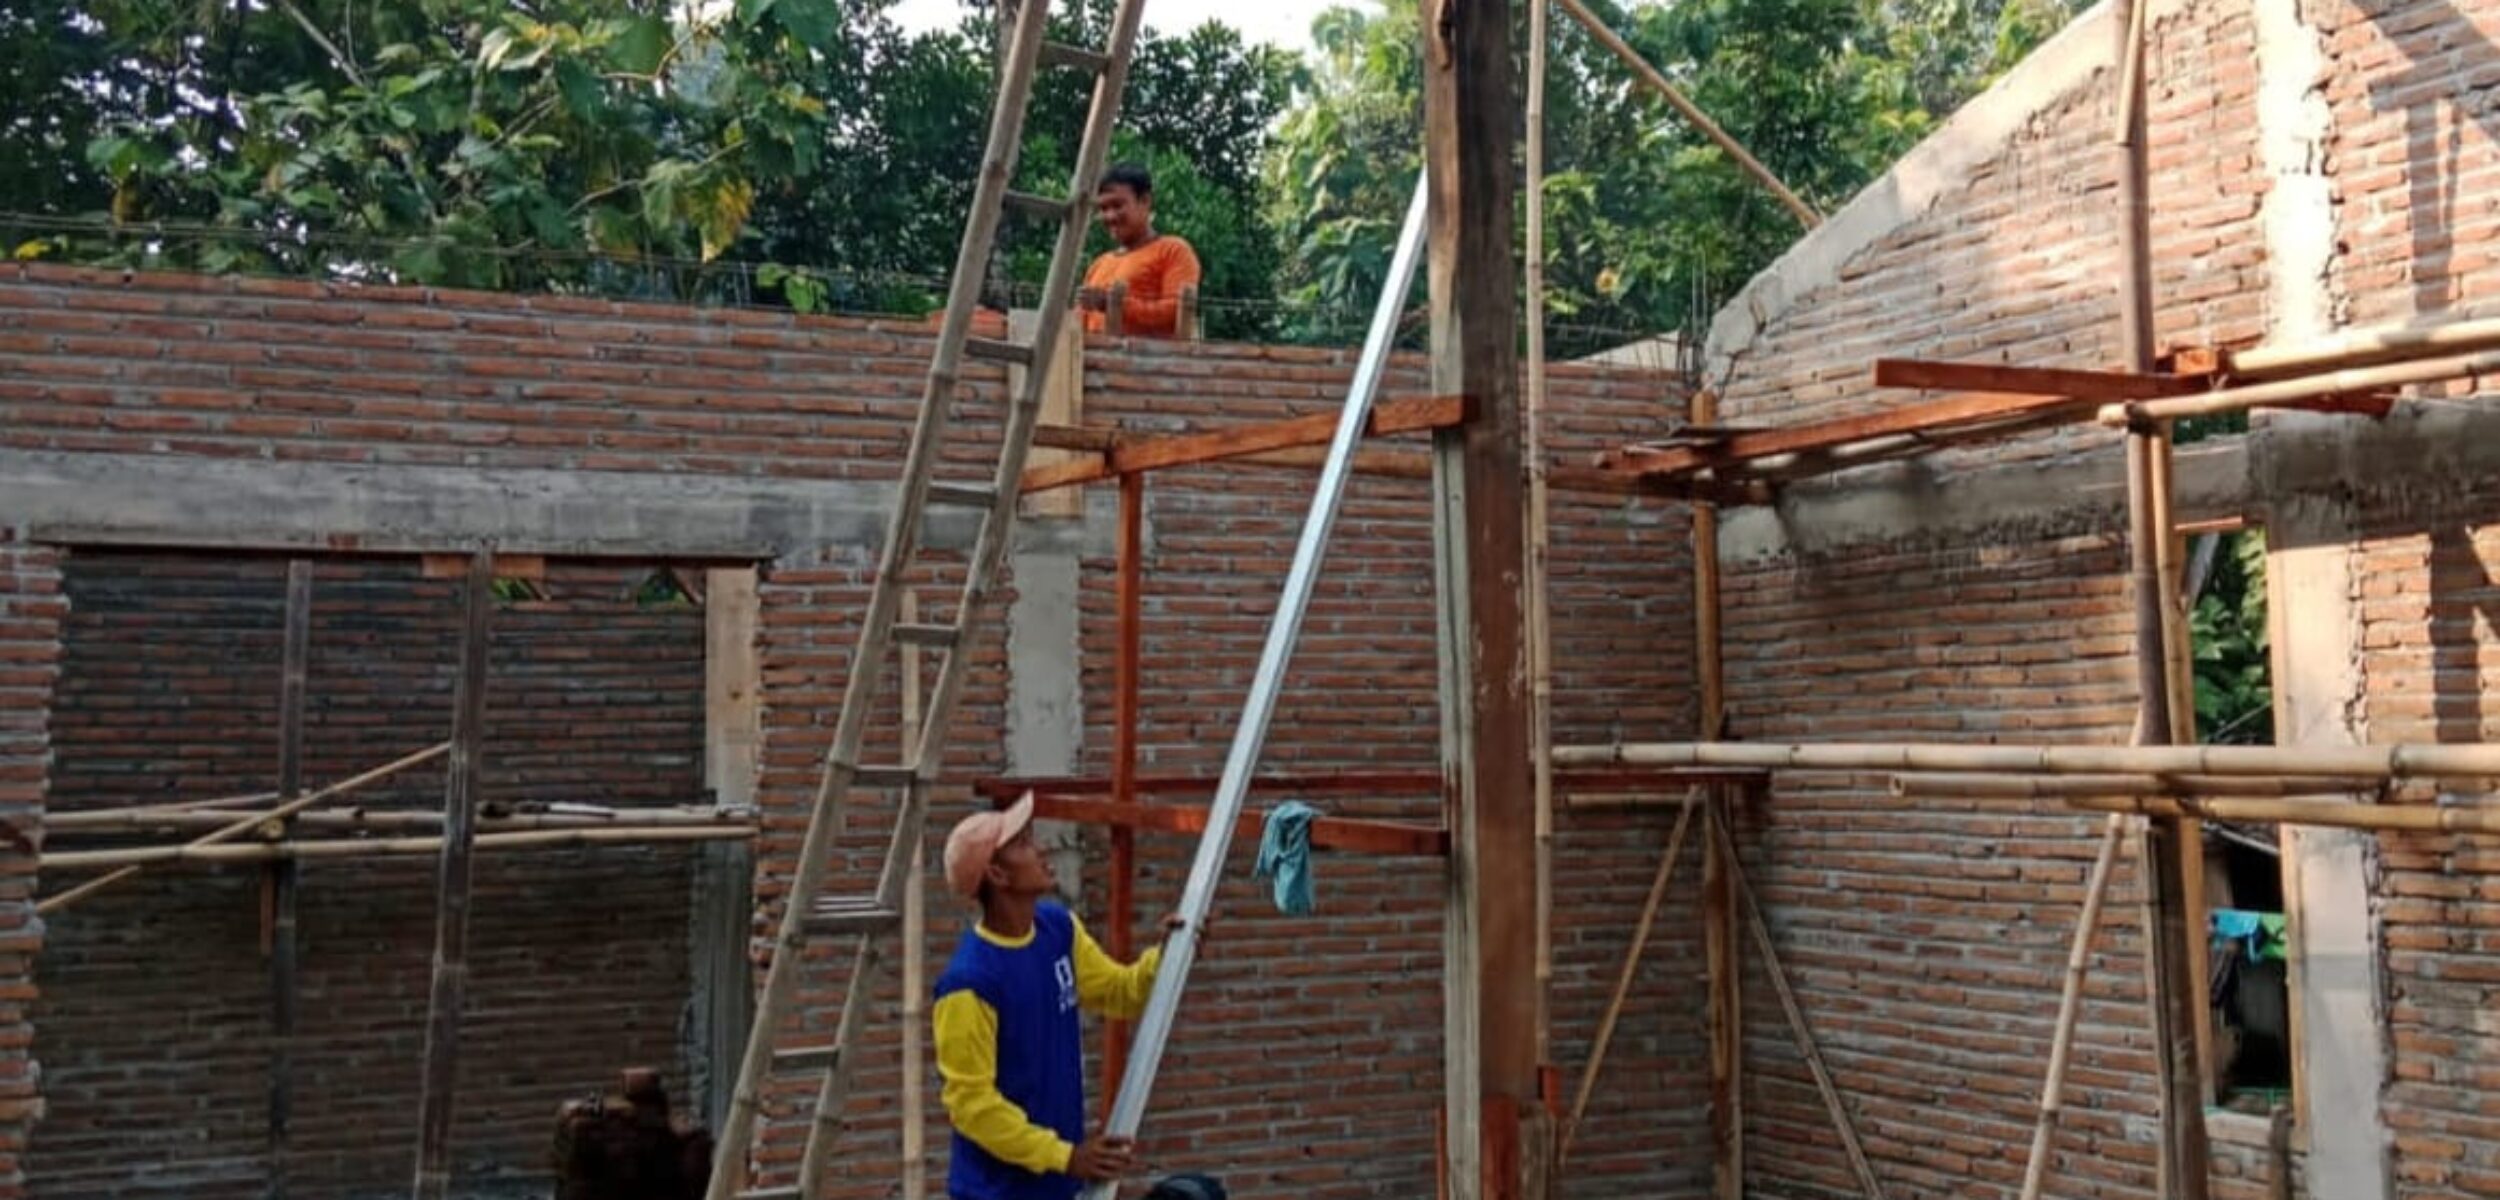 Realisasi banprov rumah tidak layak huni (RTLH) di Desa Jambangan, Kecamatan Mondokan, Kabupaten Sragen. (Masrikin/kabarterdepan.com)